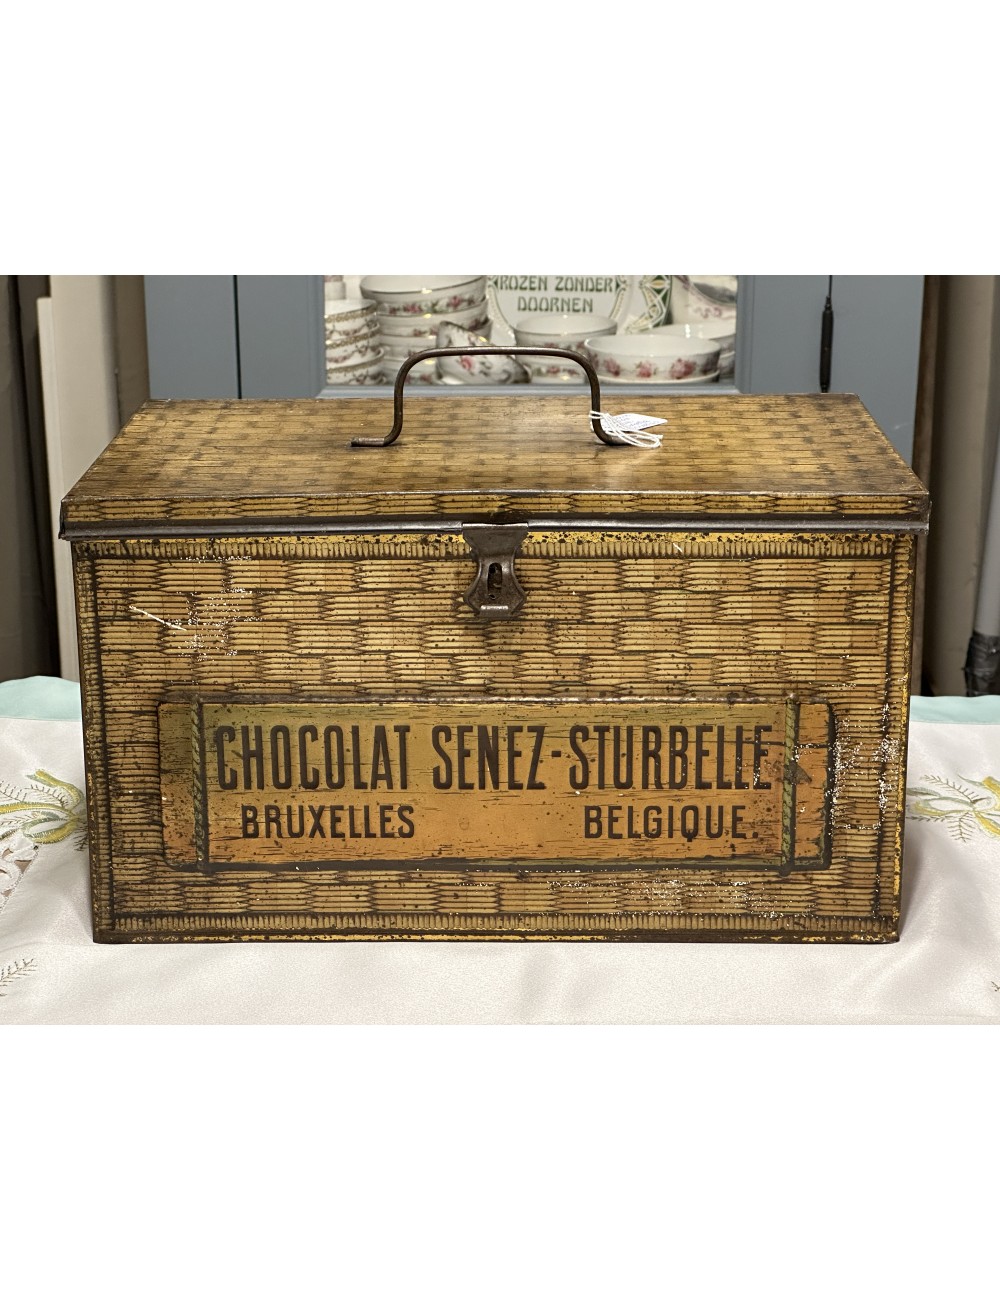 Winkelblik / Voorraadblik - groot model - Chocolat Senez-Sturbelle Bruxelles Belgique